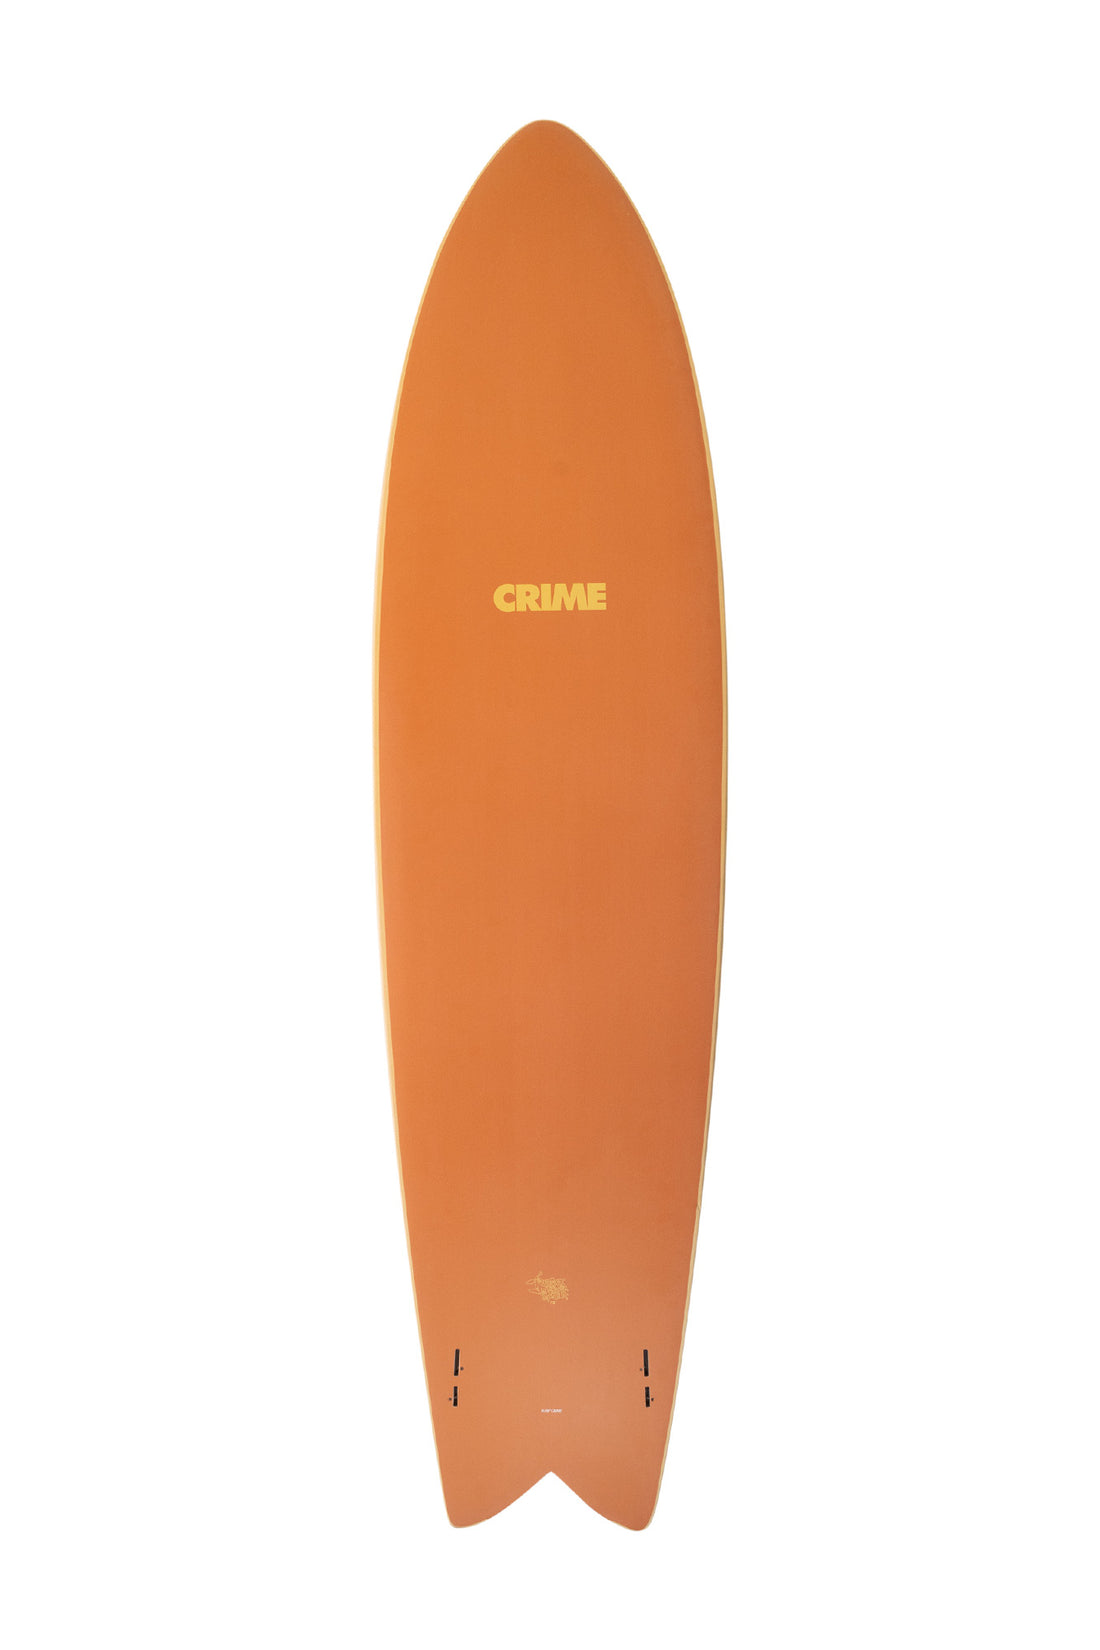 7'10 SURF CRIME LONG FISH - OLD FOAM/UMBRE